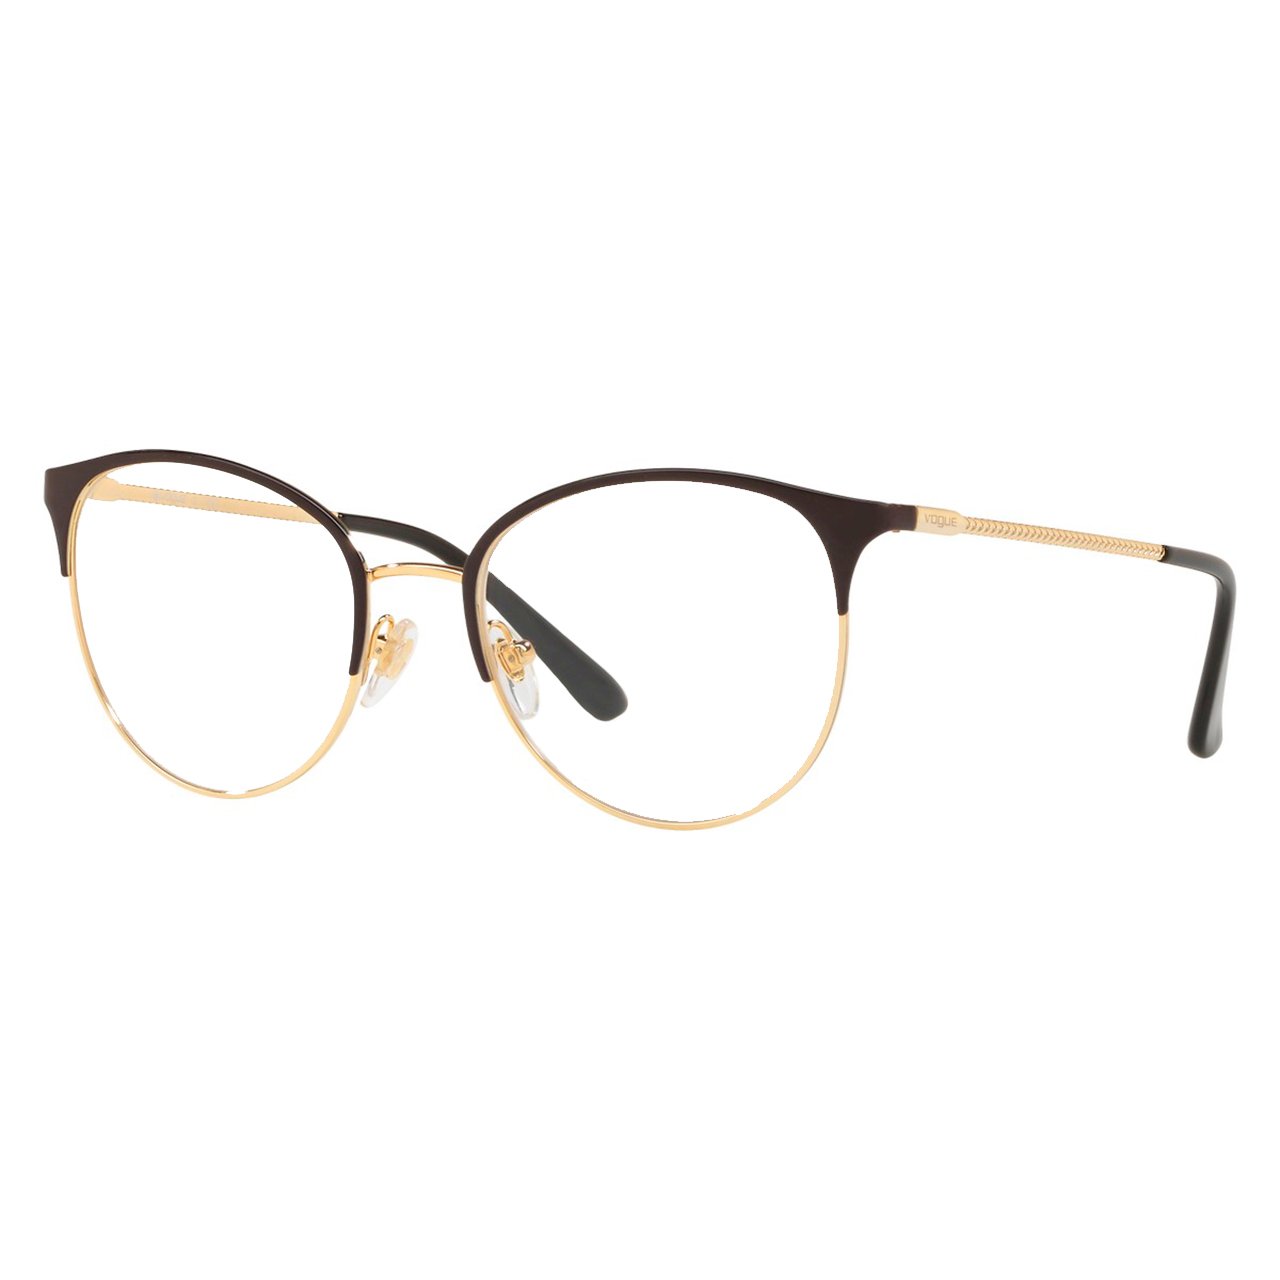 Óculos de Grau Redondo Vogue VO4108 Preto Brilho com Dourado